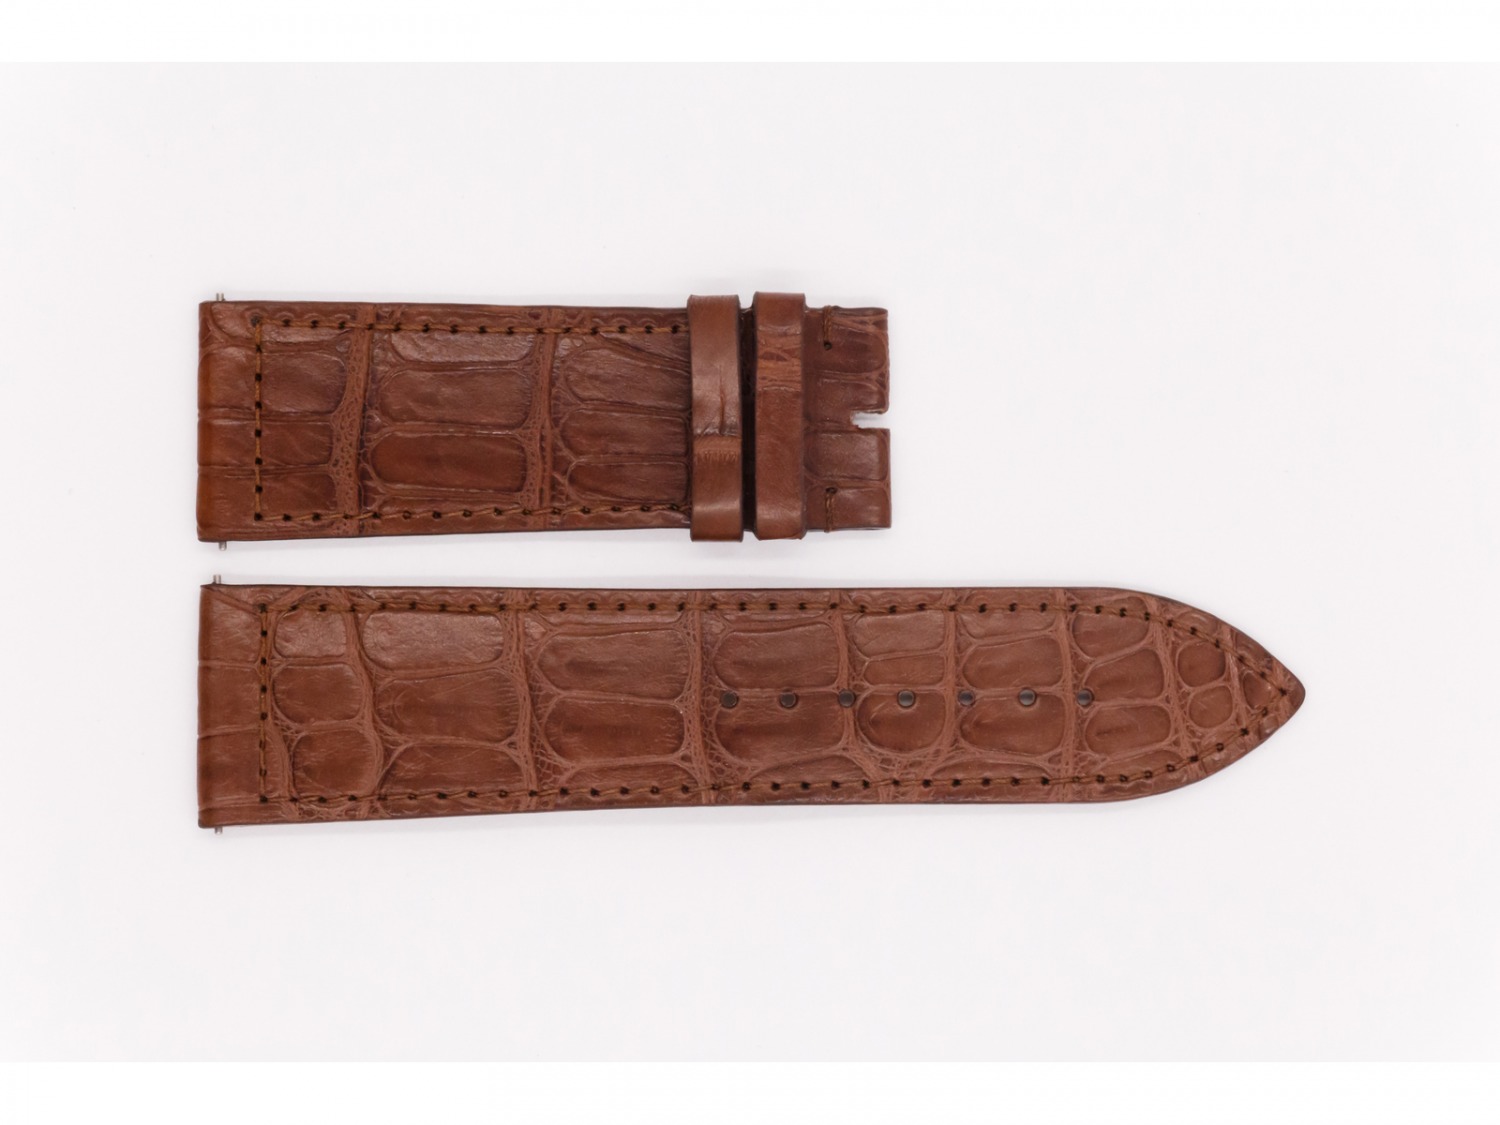 Leather Franck Muller Strap, light brown